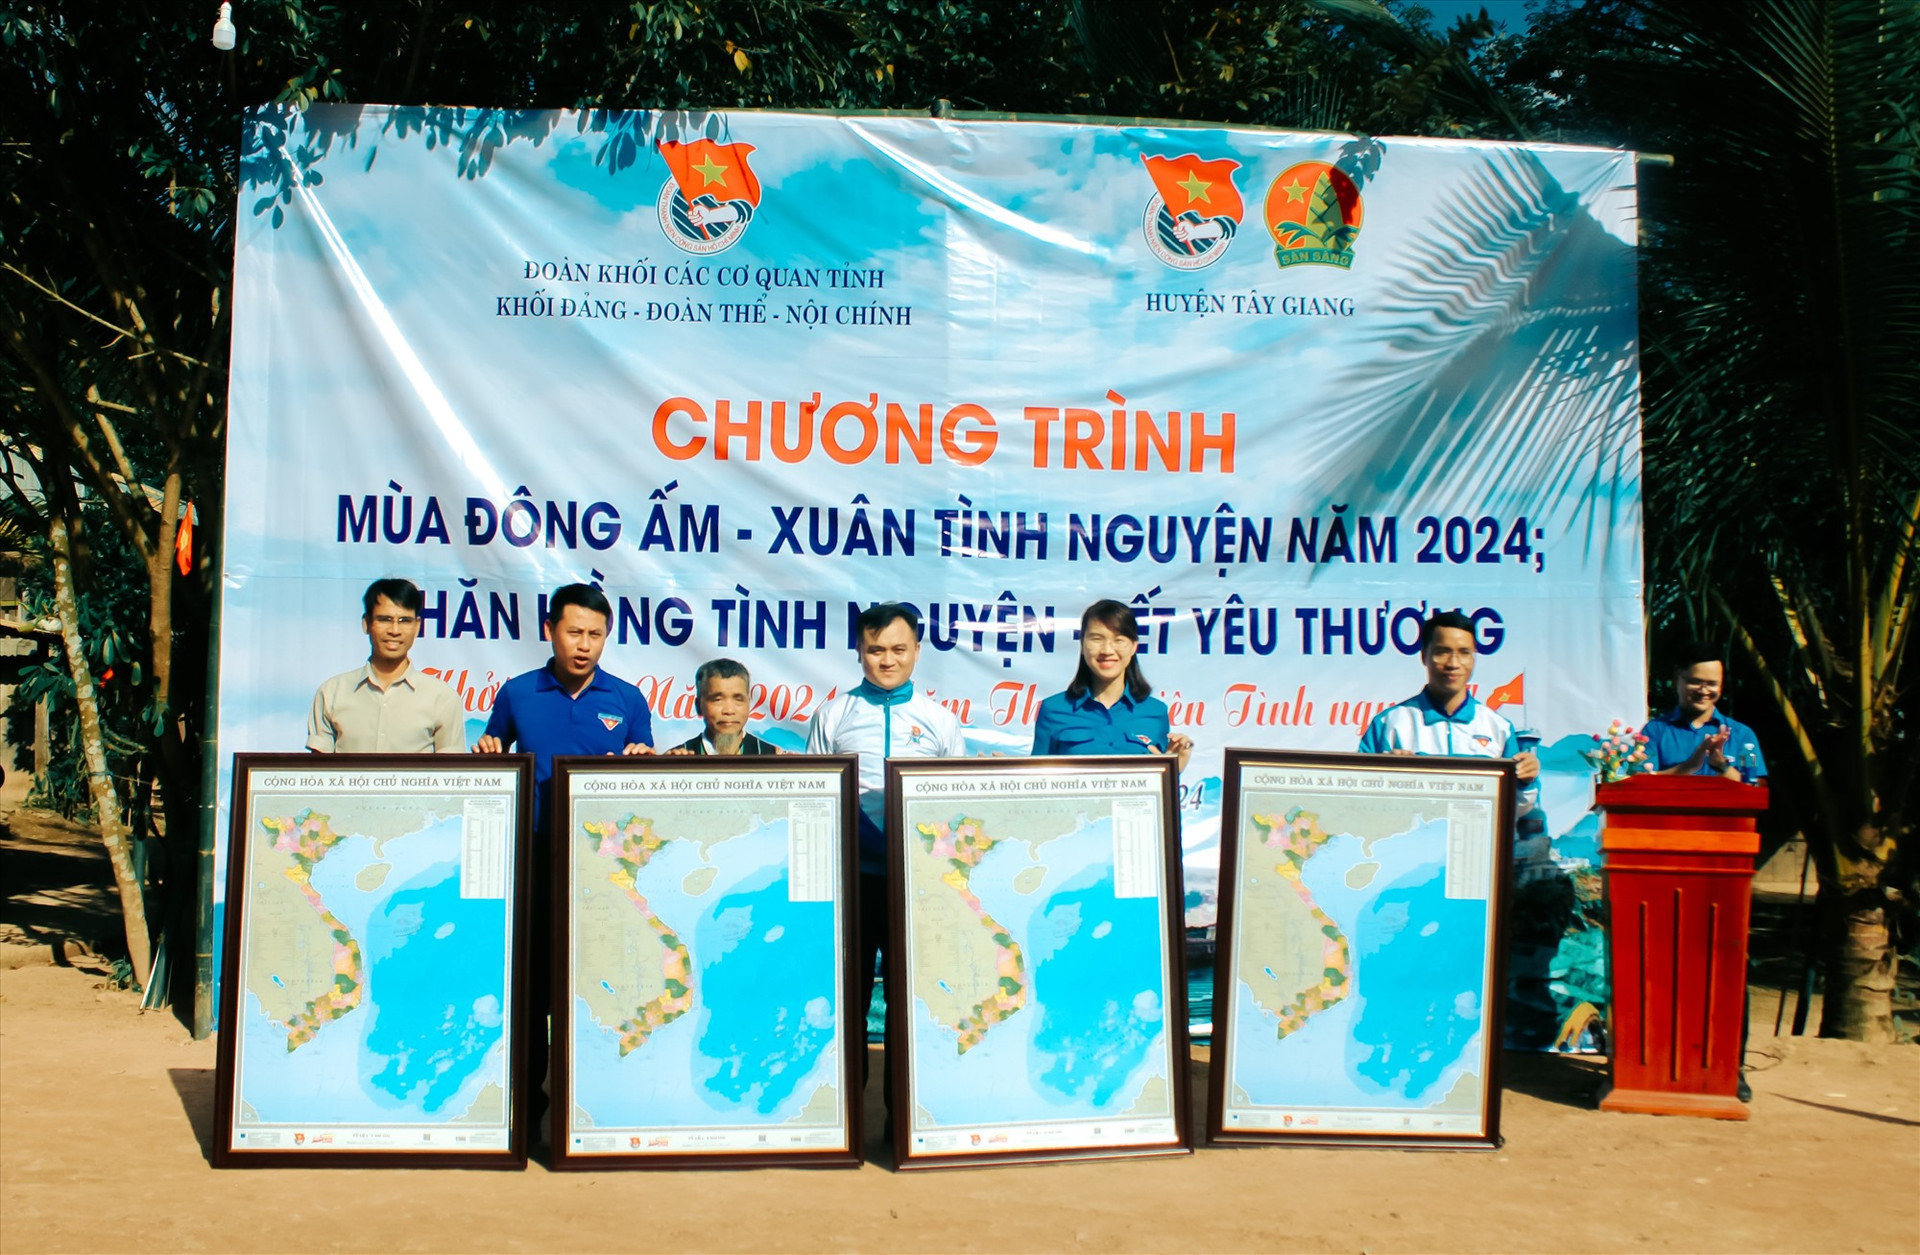 Trao tặng bản đồ Việt Nam cho địa phương và các trường học trên địa bàn xã Lăng. Ảnh: T.H